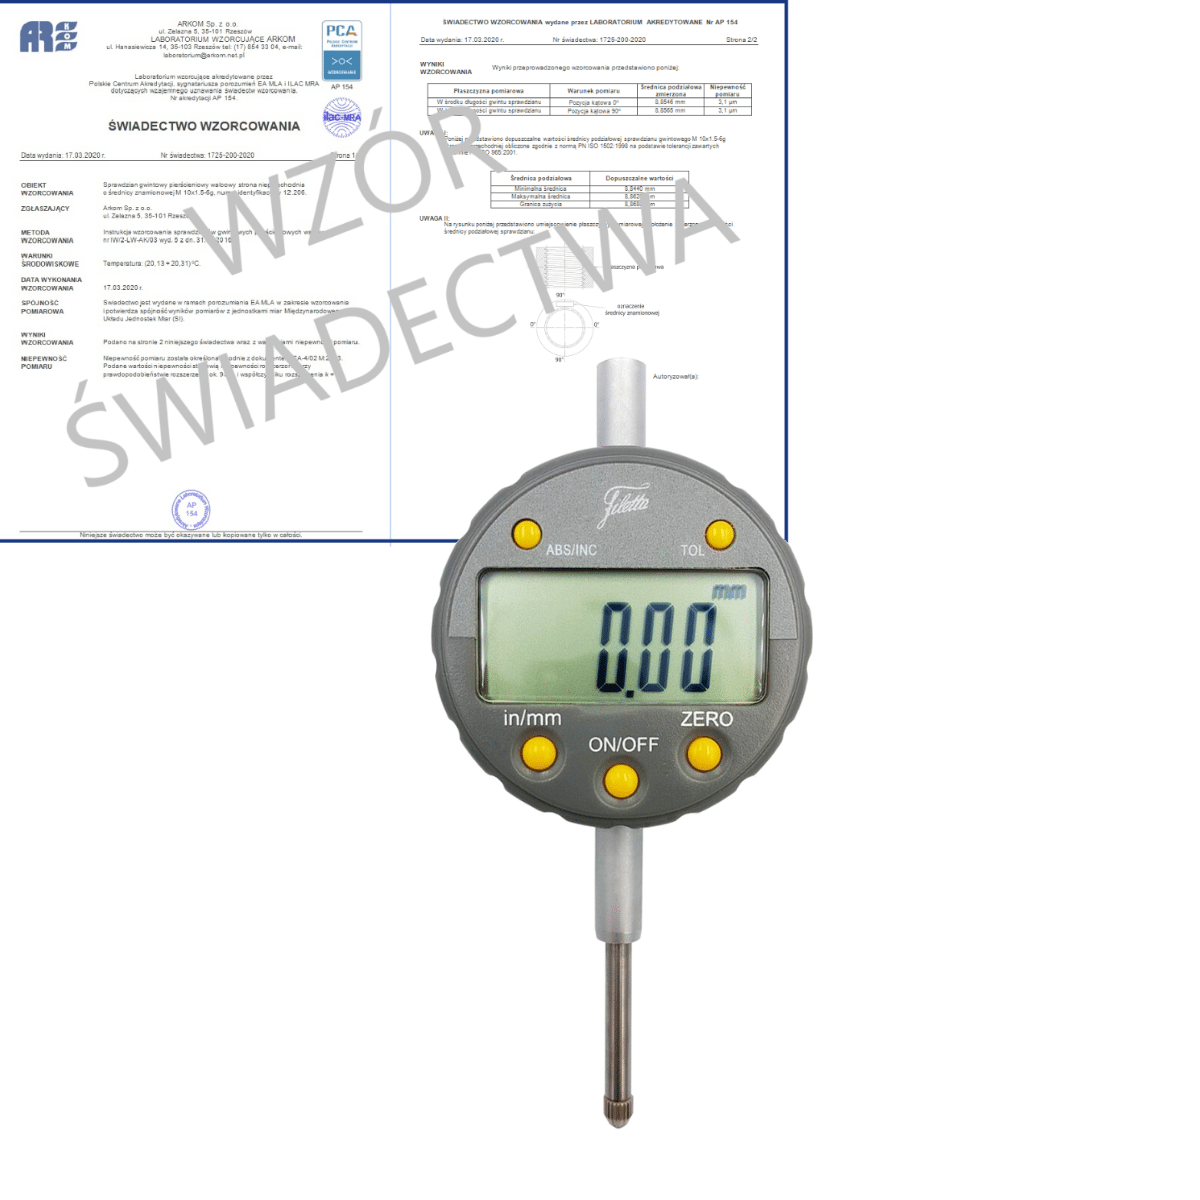 SCHUT czujnik elektroniczny 0-25/0.01 mm + świadectwo wzorcowania PCA 907.649 WZORC